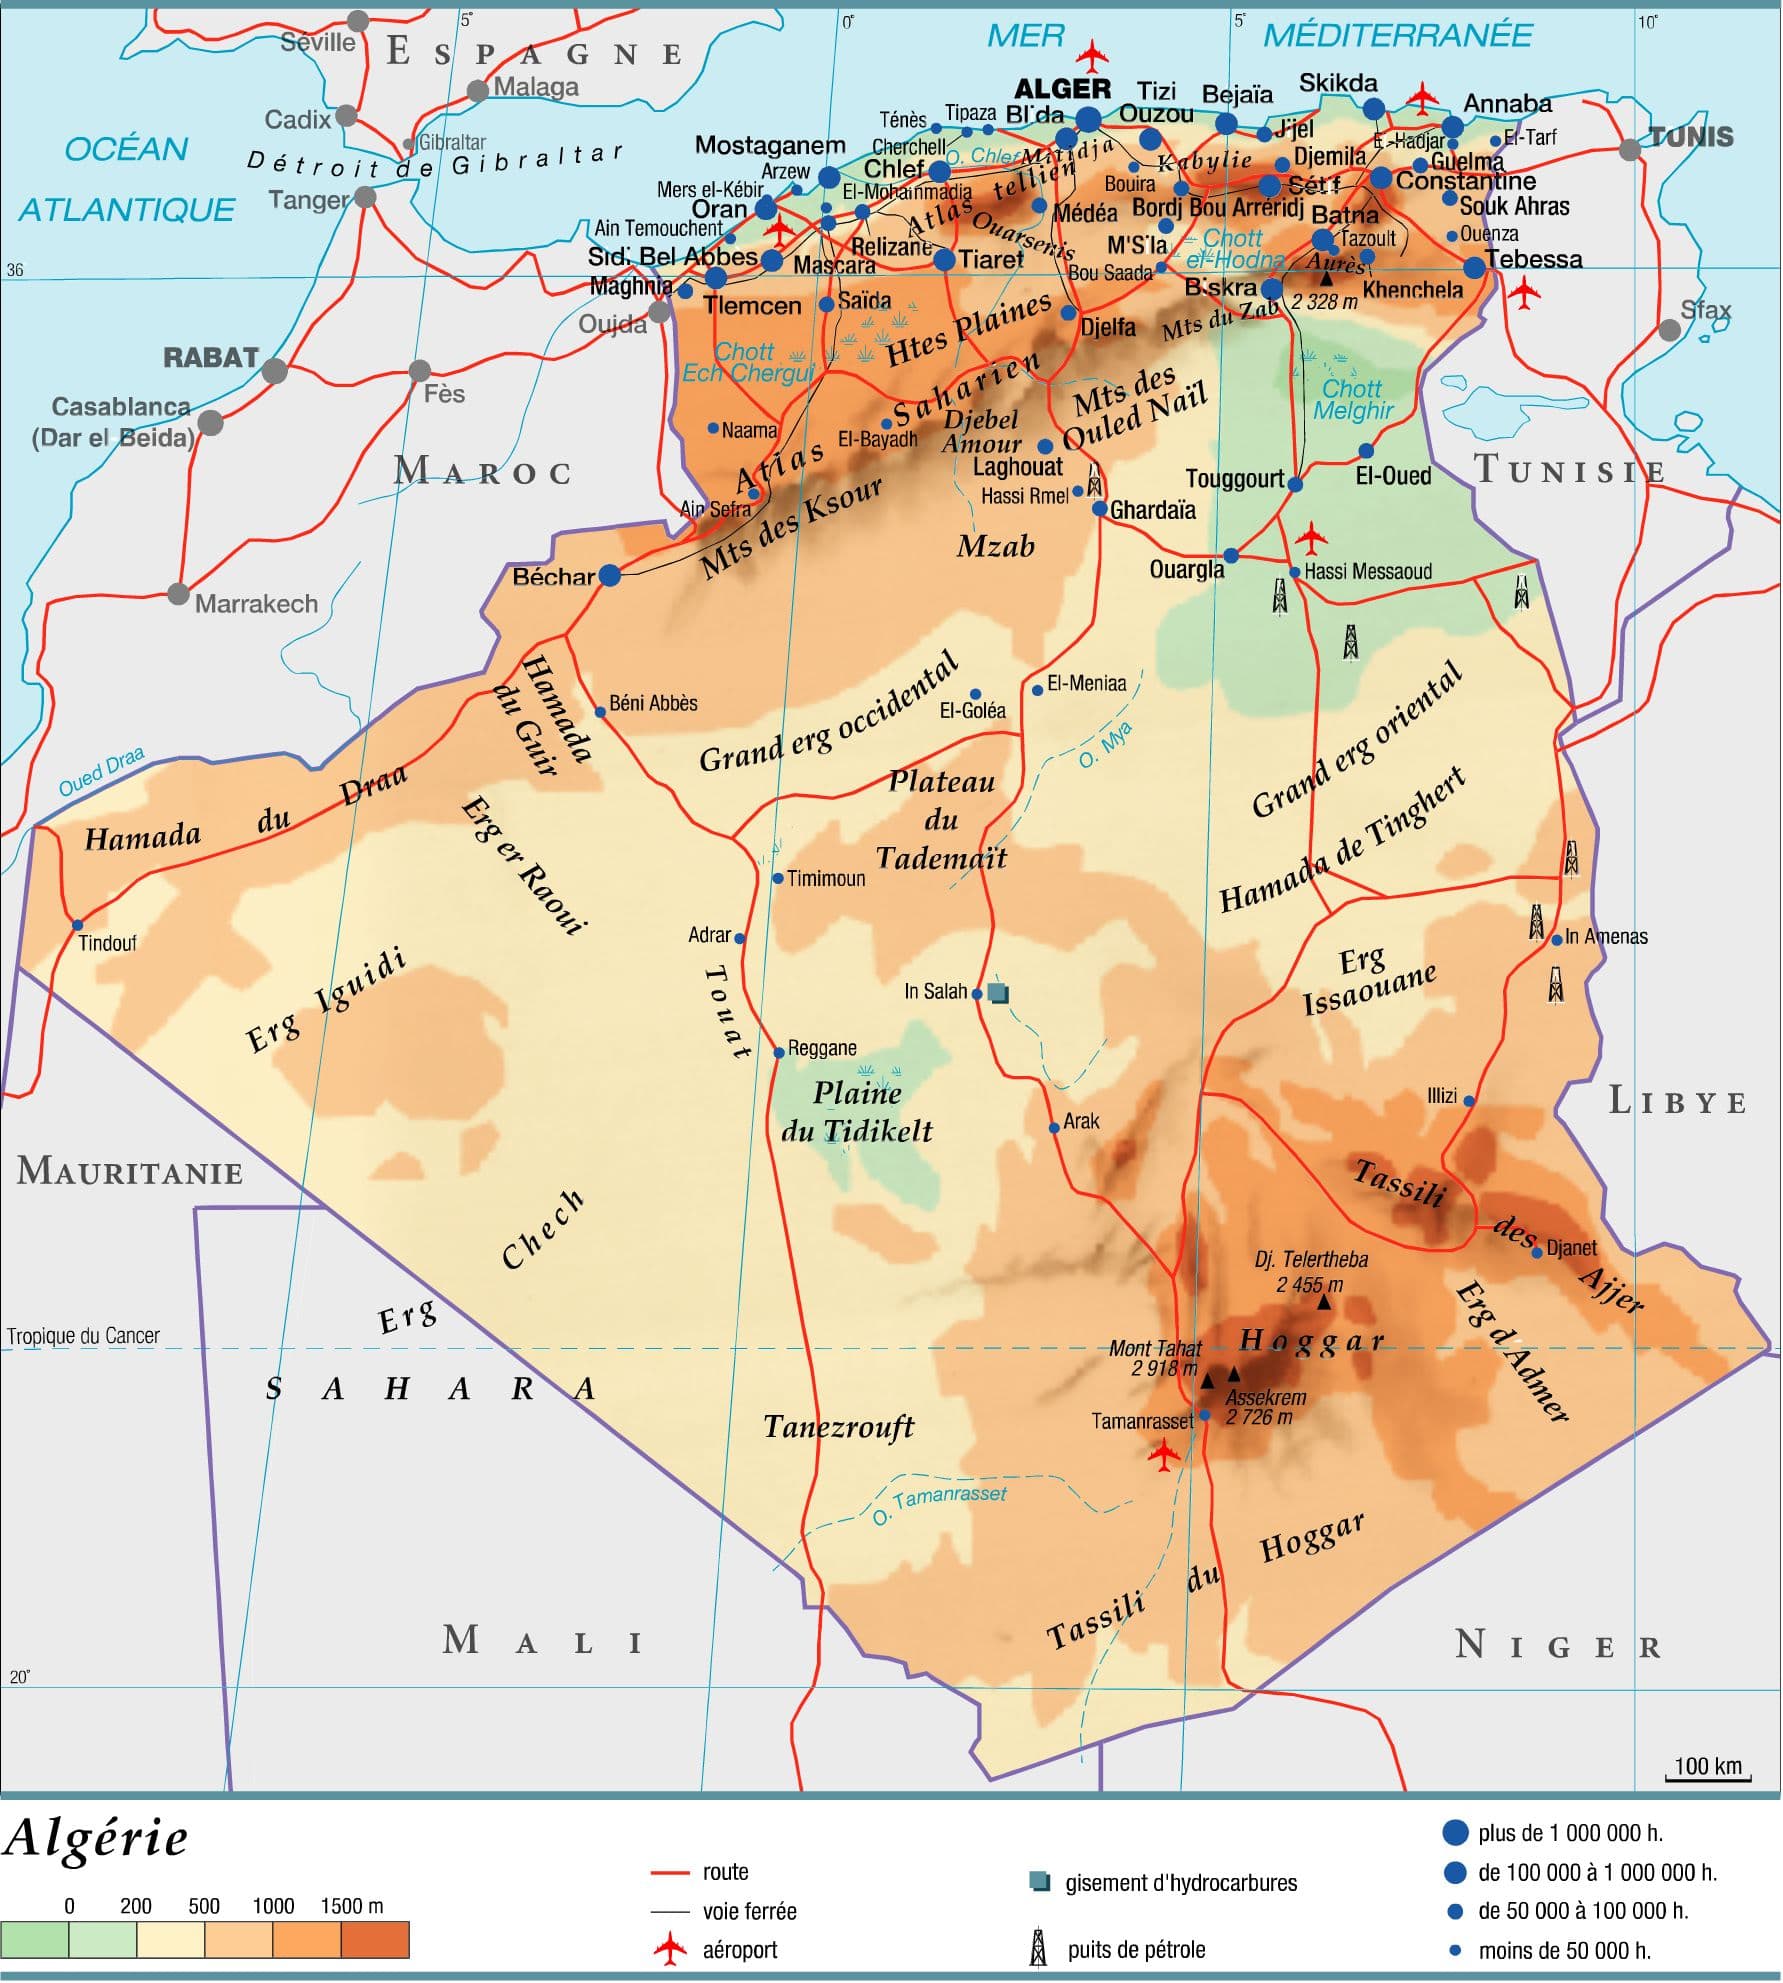 Algérie – Média LAROUSSE